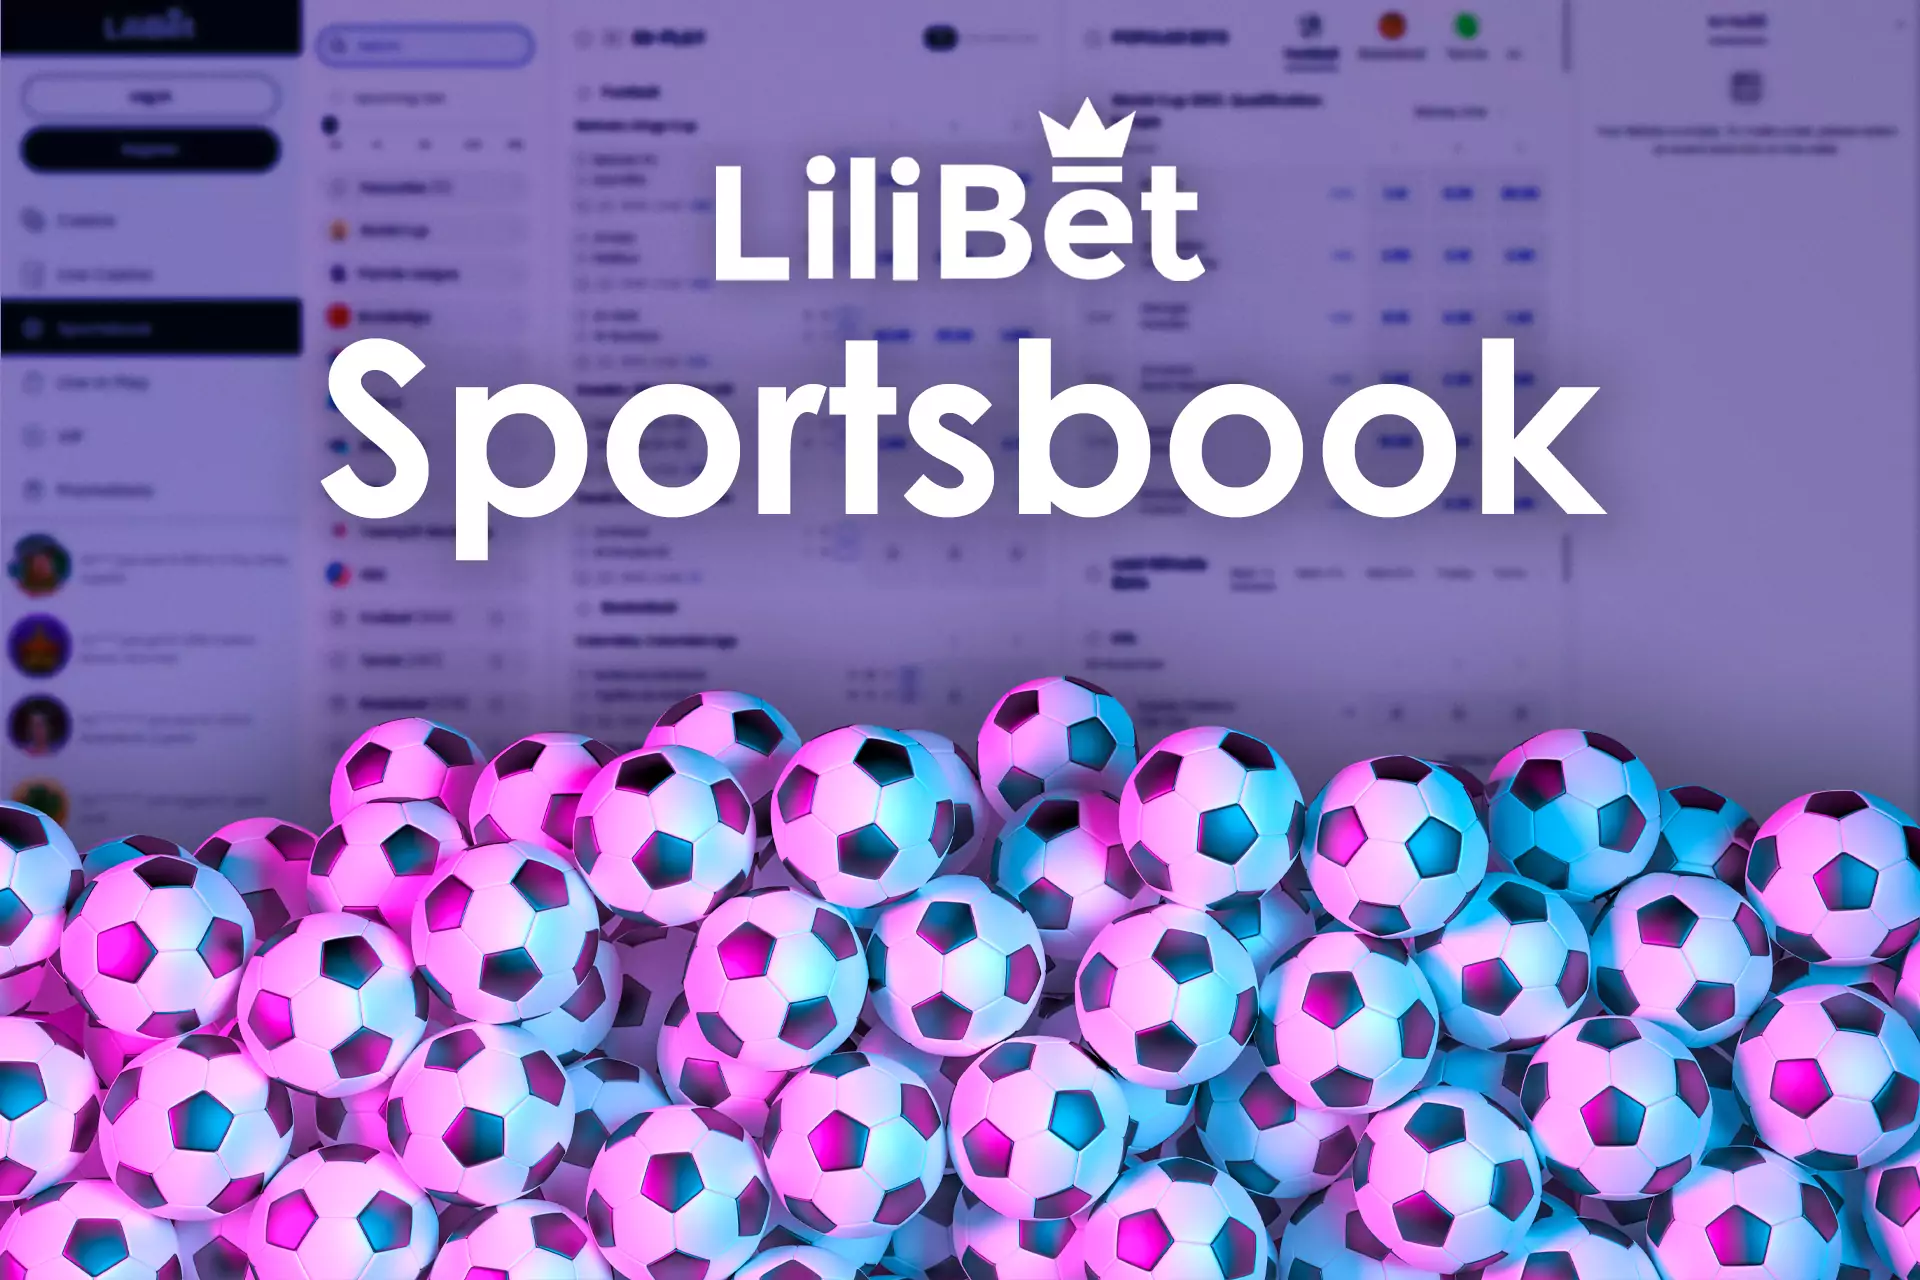 Lilibet की स्पोर्ट्सबुक में आपको सभी लोकप्रिय खेल कार्यक्रम मिलते हैं।